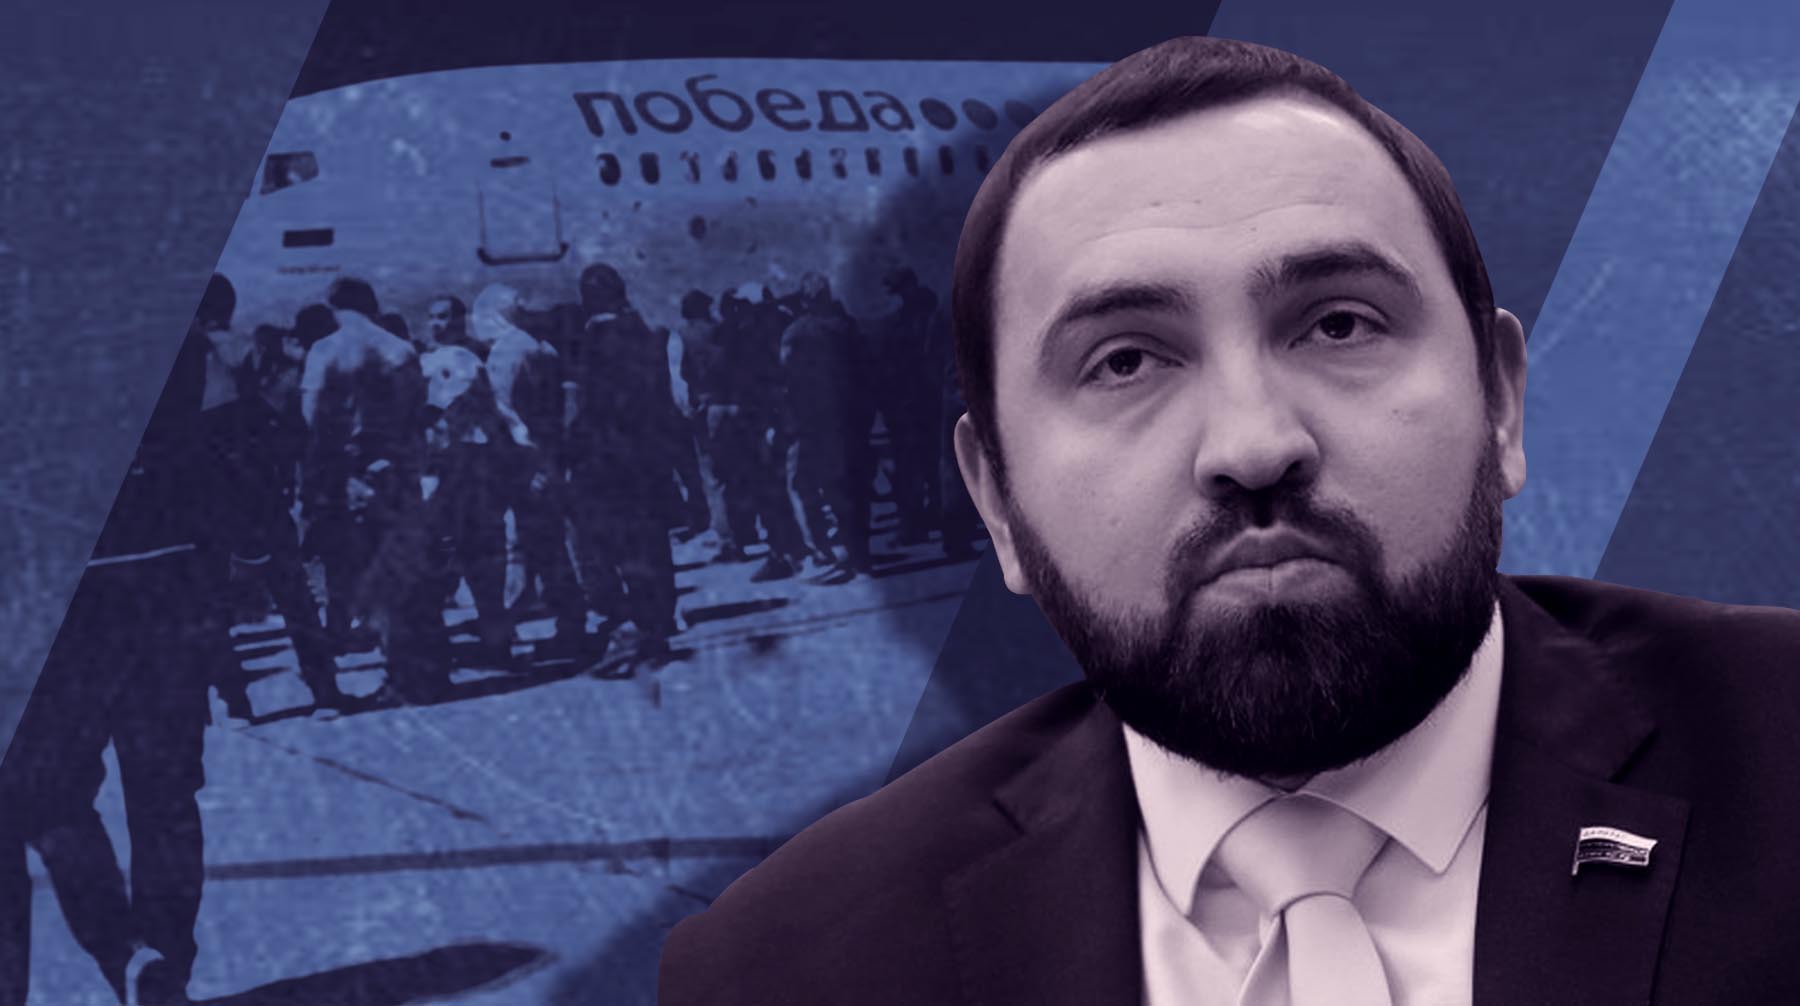 Dailystorm - Депутат Хамзаев обвинил «украинскую хунту» в организации беспорядков в Махачкале и раскритиковал МВД